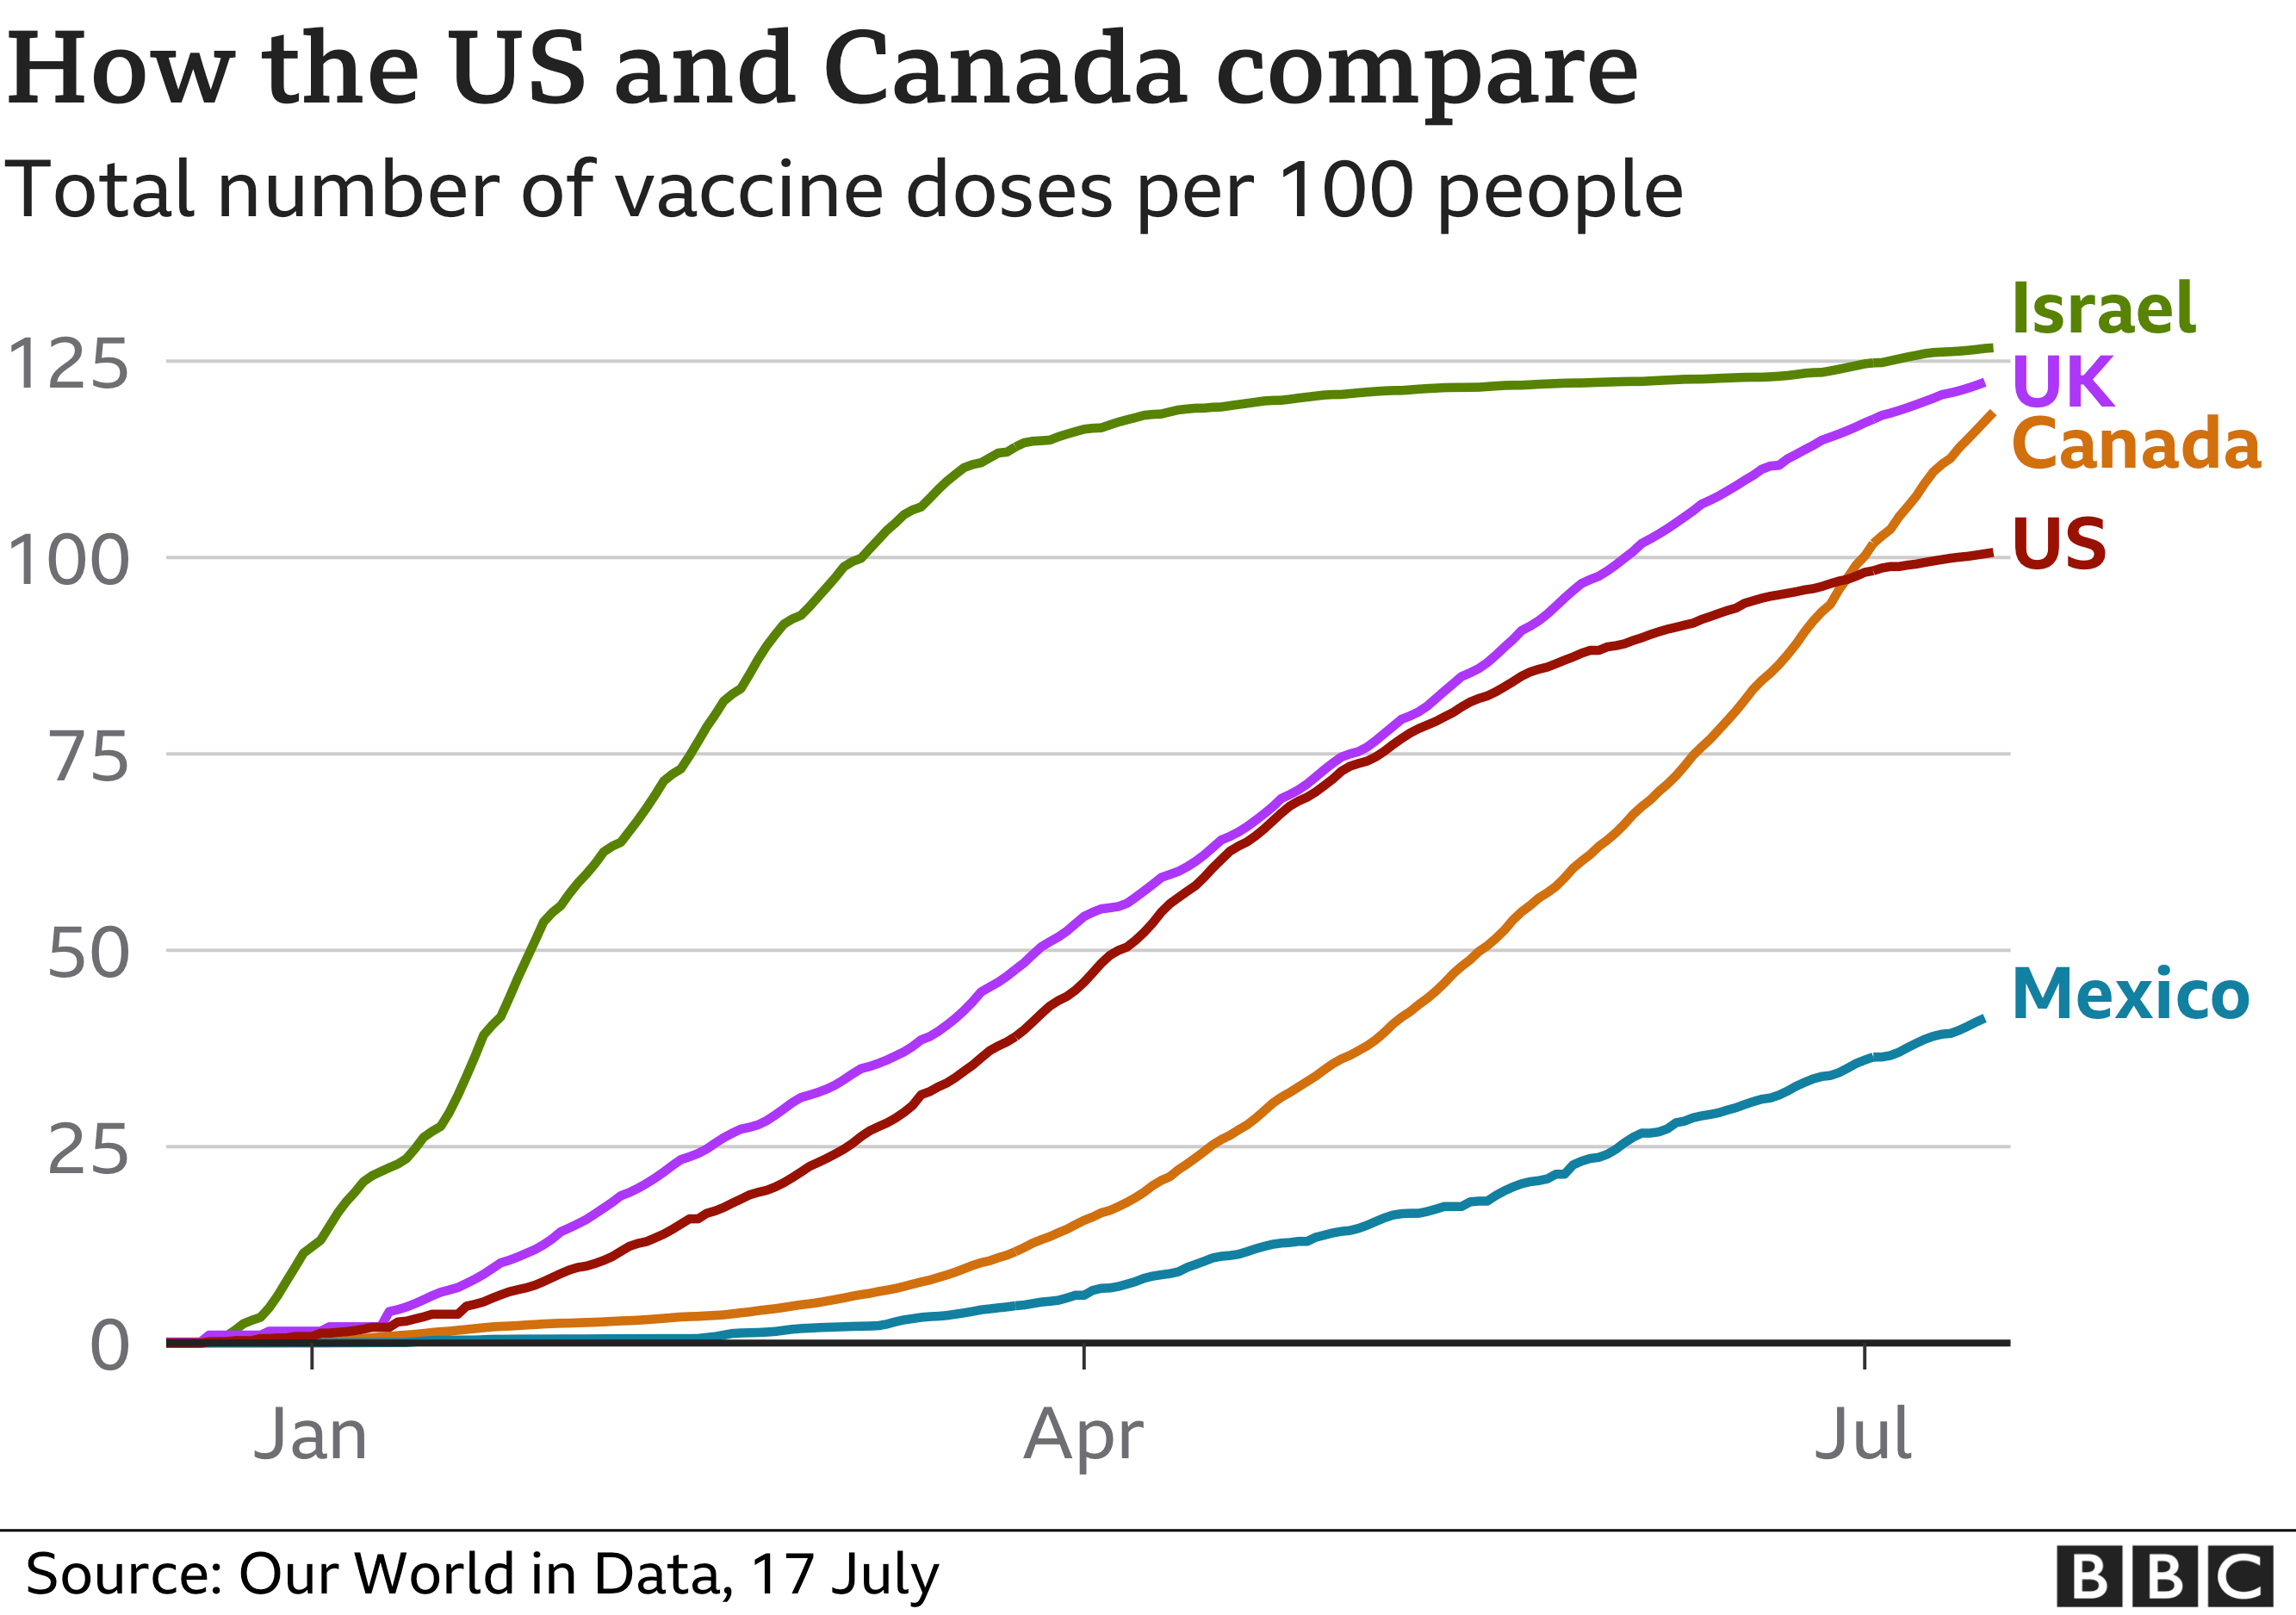 Los canadienses están mucho más motivados a vacunarse - Foro USA y Canada